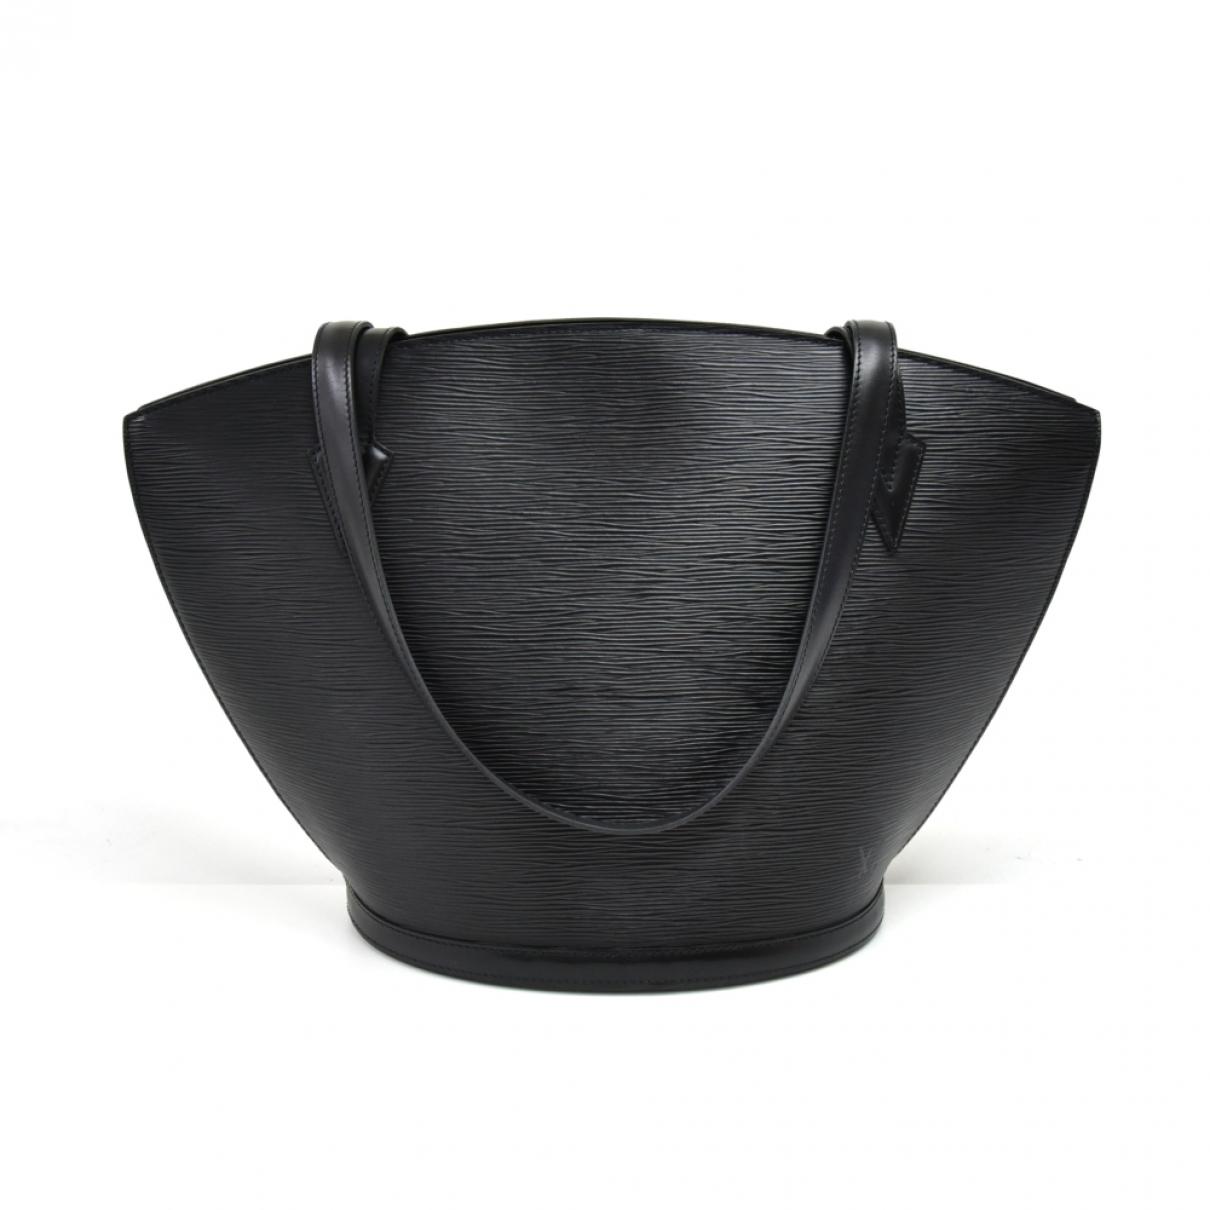 Lyst - Louis Vuitton Vintage St Jacques Black Leather Handbag in Black